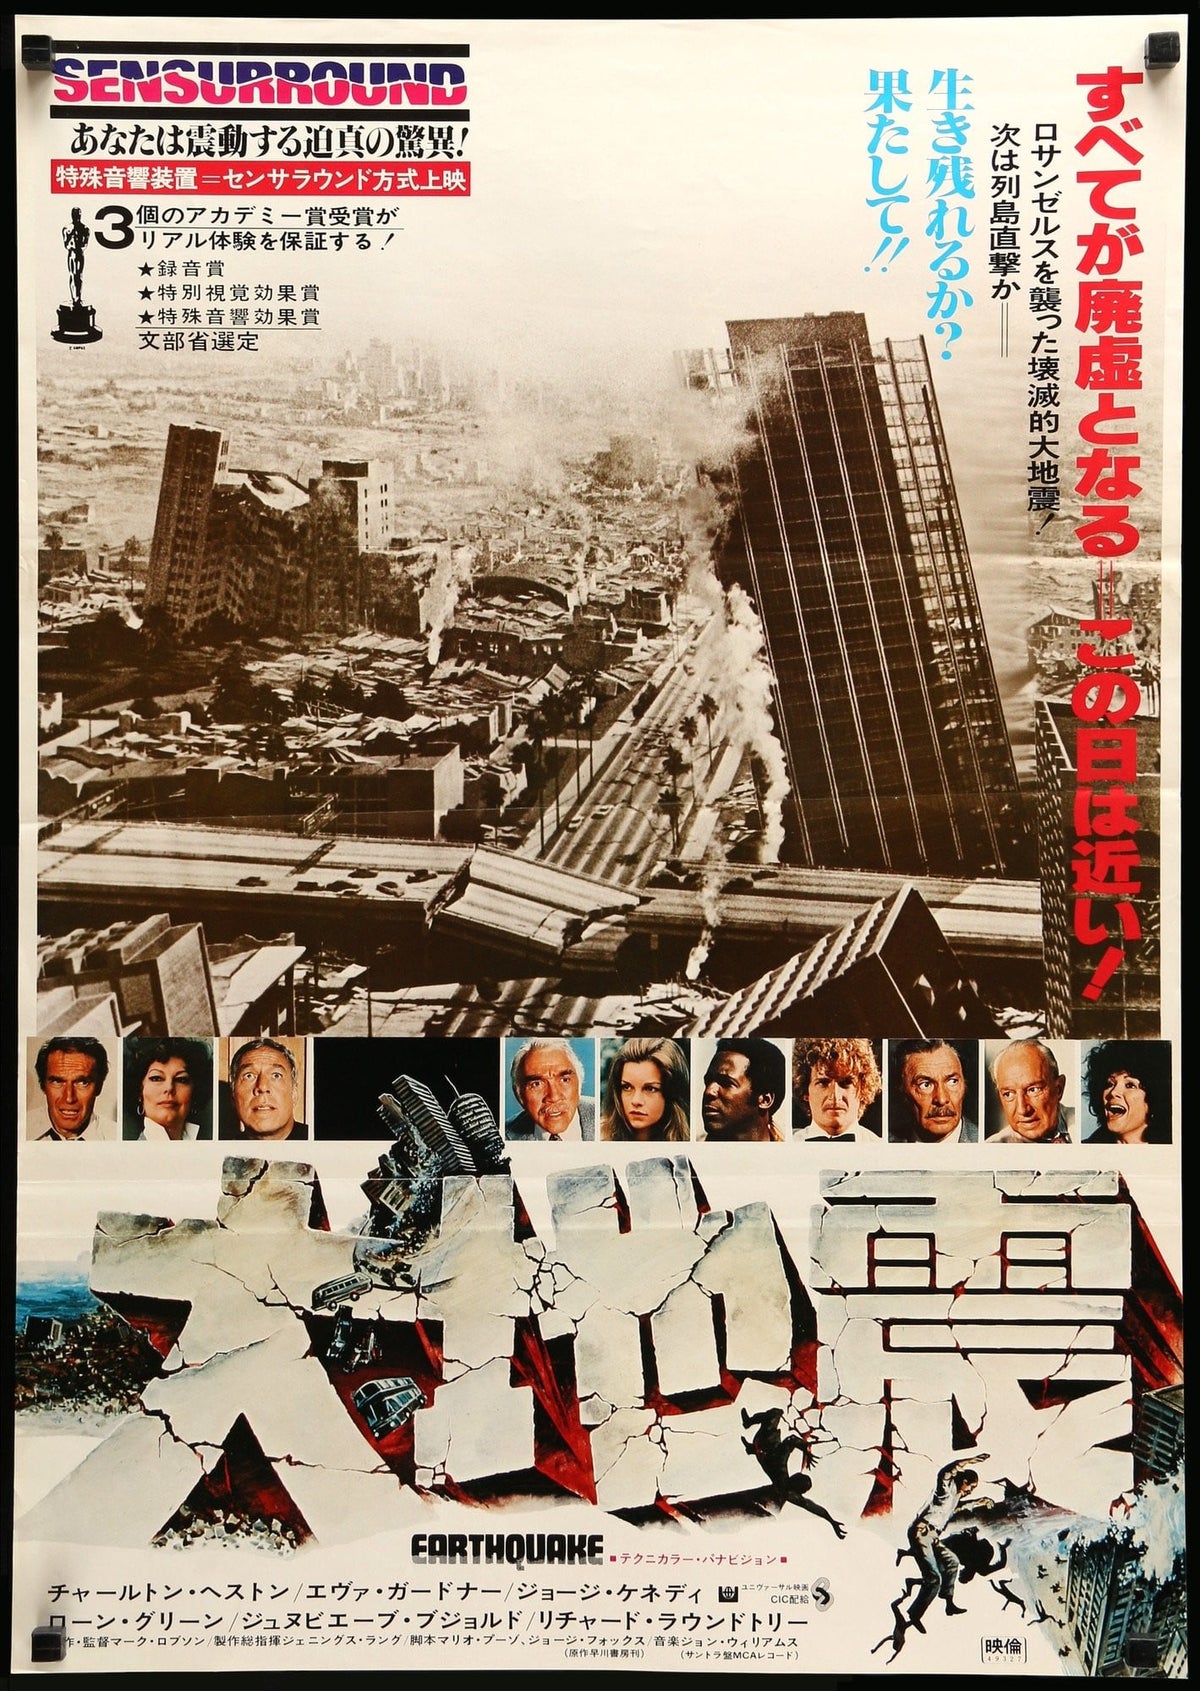 Earthquake (1974) original movie poster for sale at Original Film Art